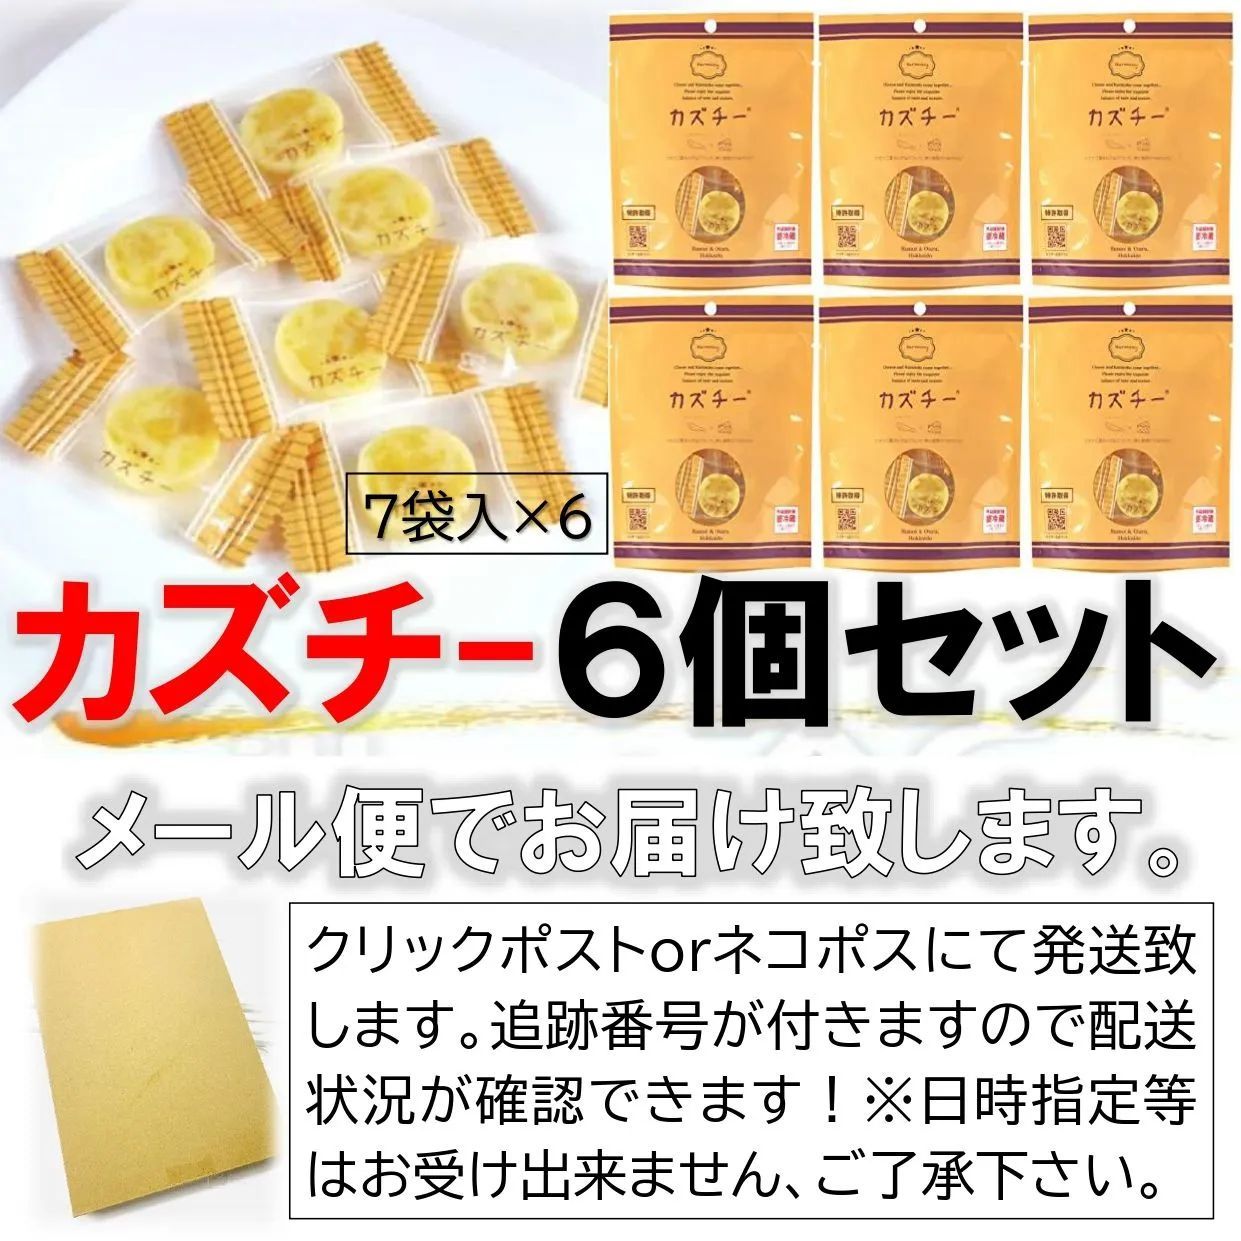 カズチー 井原水産 6個 送料無料 数の子 珍味 チーズ かずちー 北海道 ...